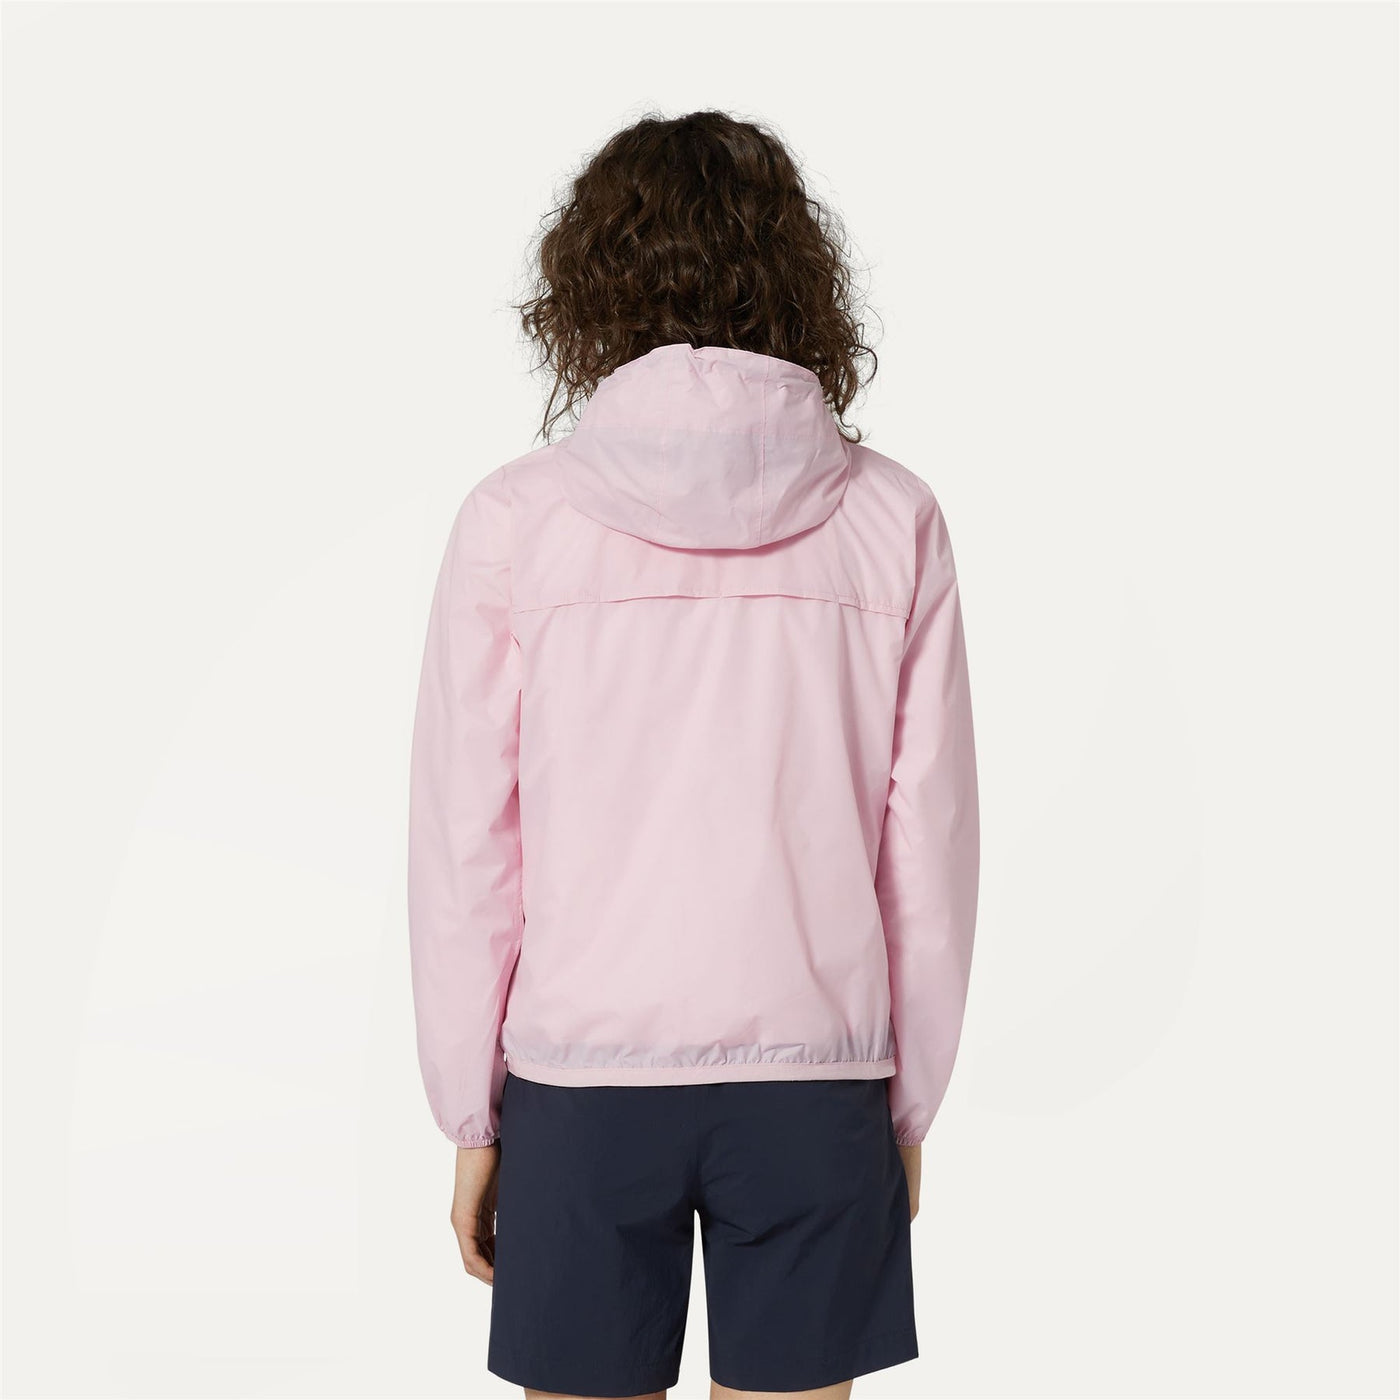 LE VRAI 3.0 Claudette - Jacket - Nylon - Woman - Pink Md